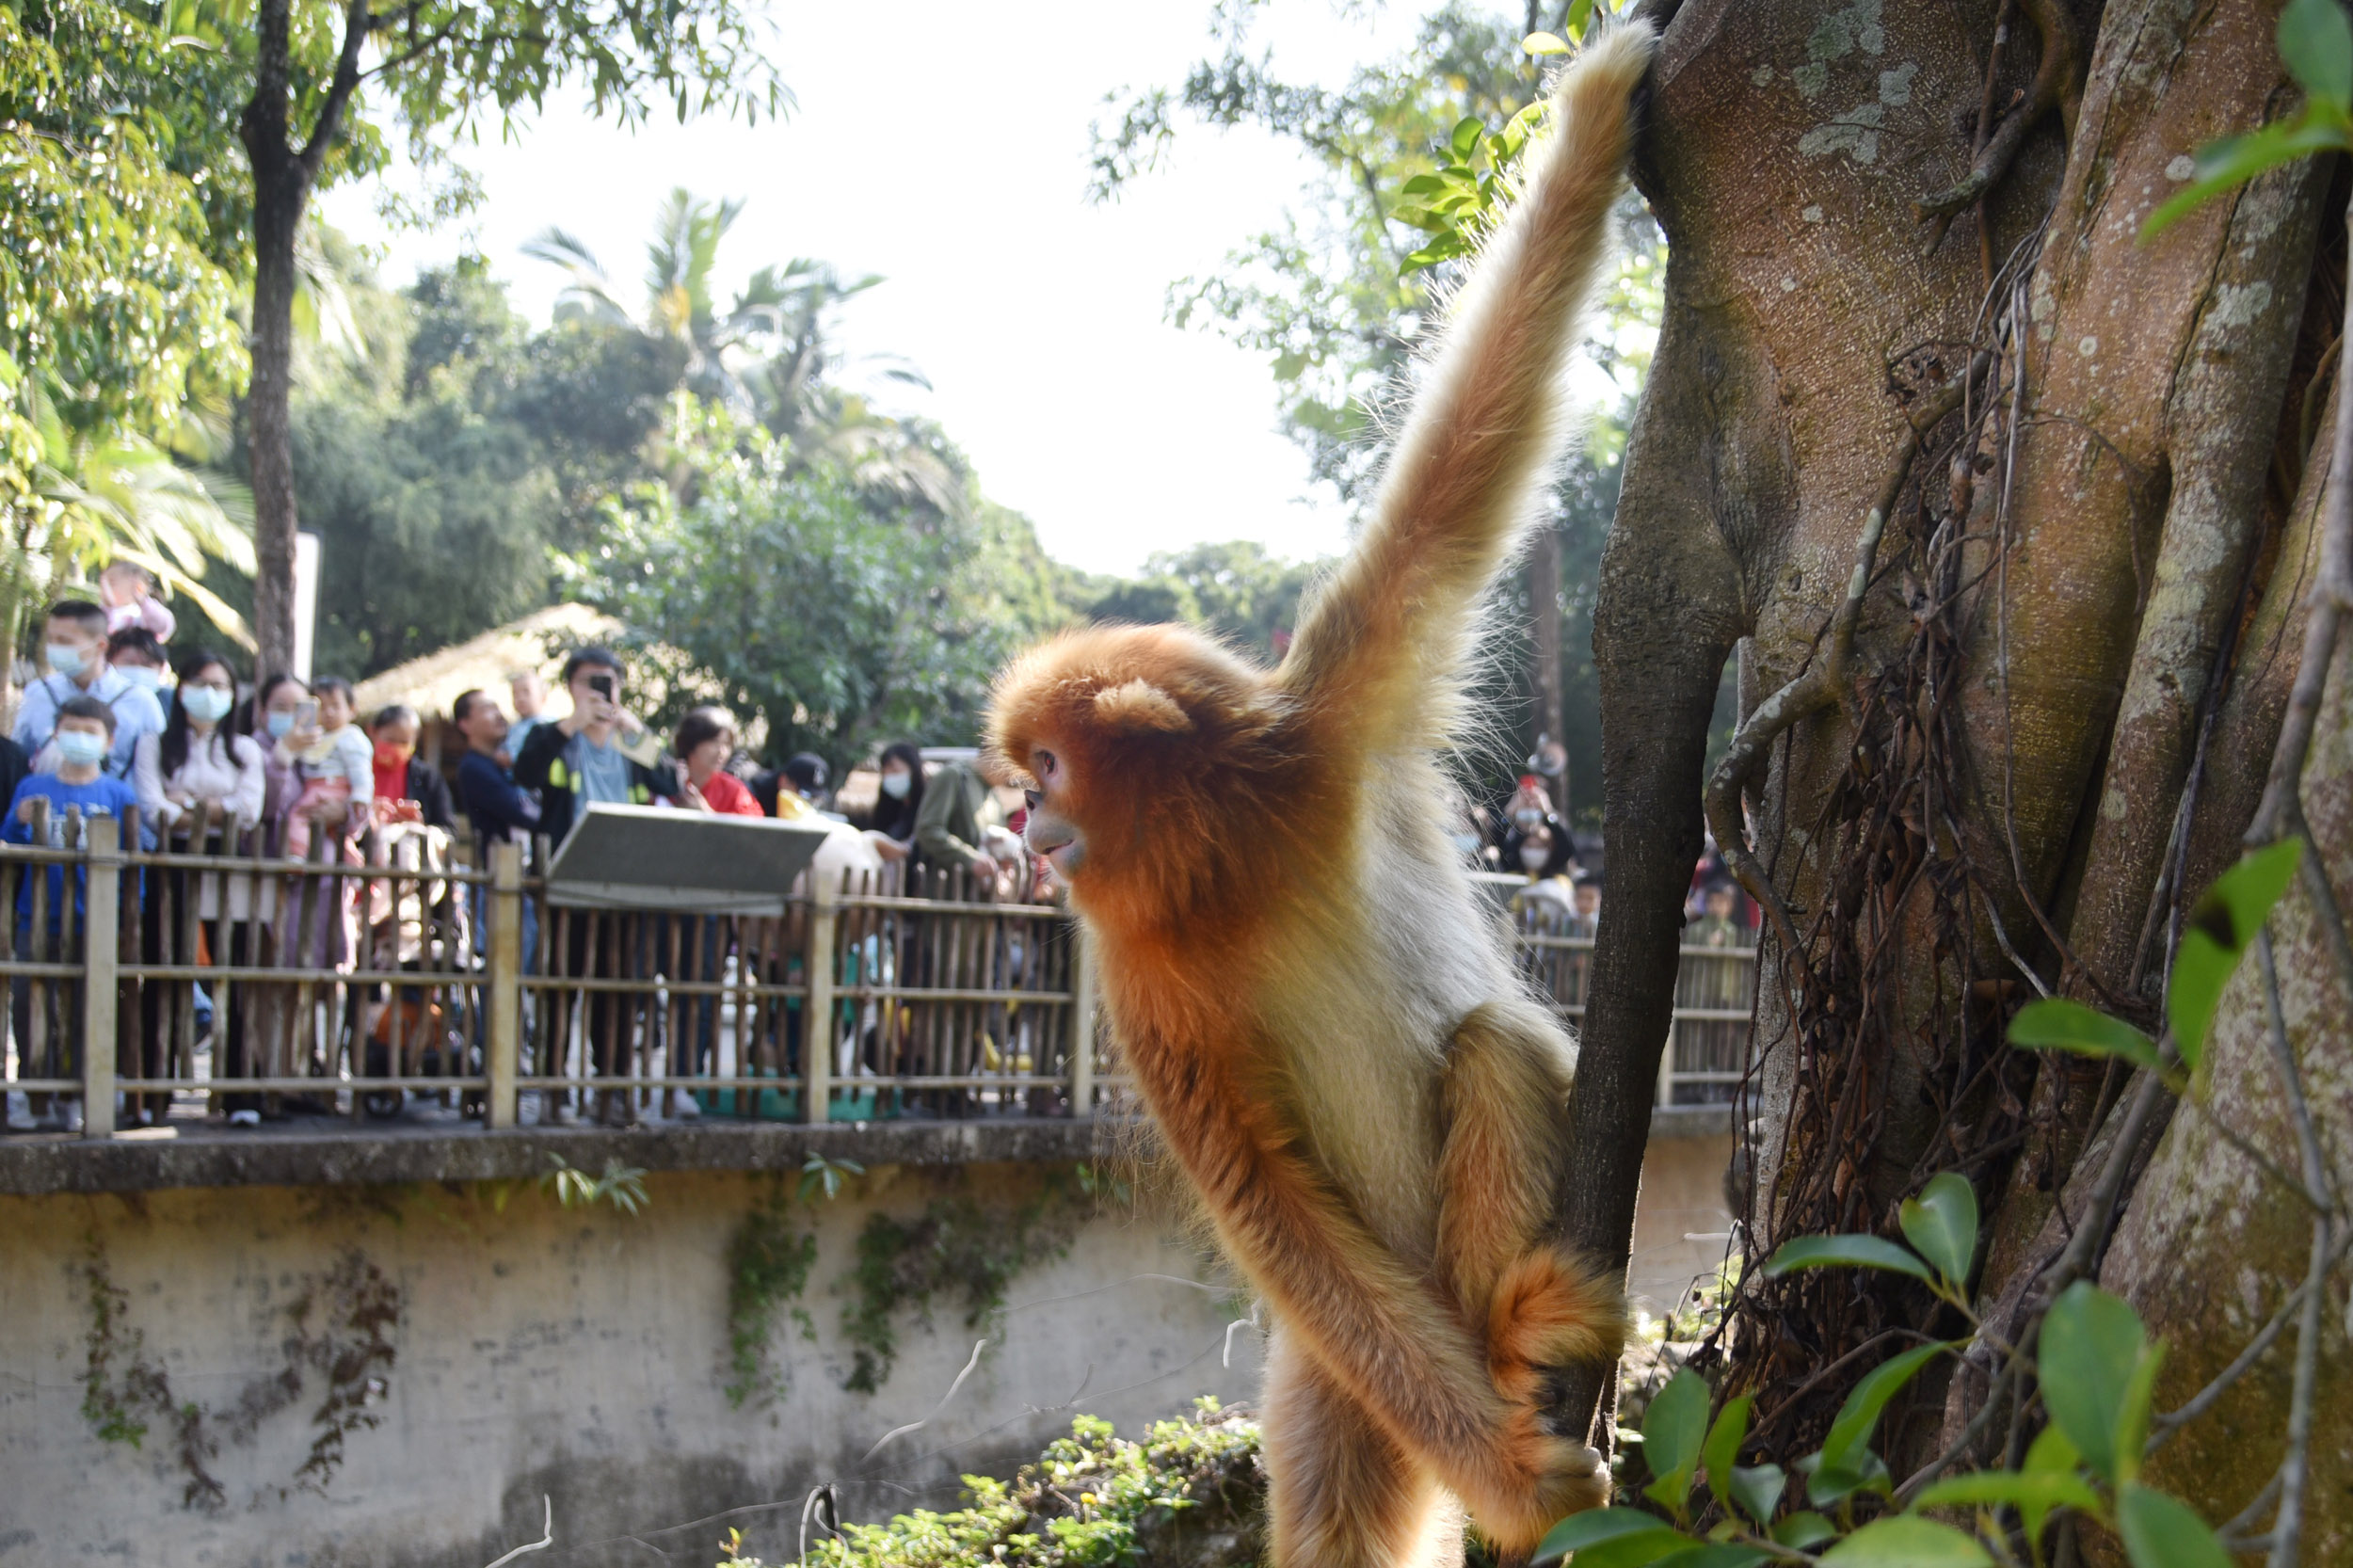 深圳野生动物园小动物萌态十足 受游客喜爱